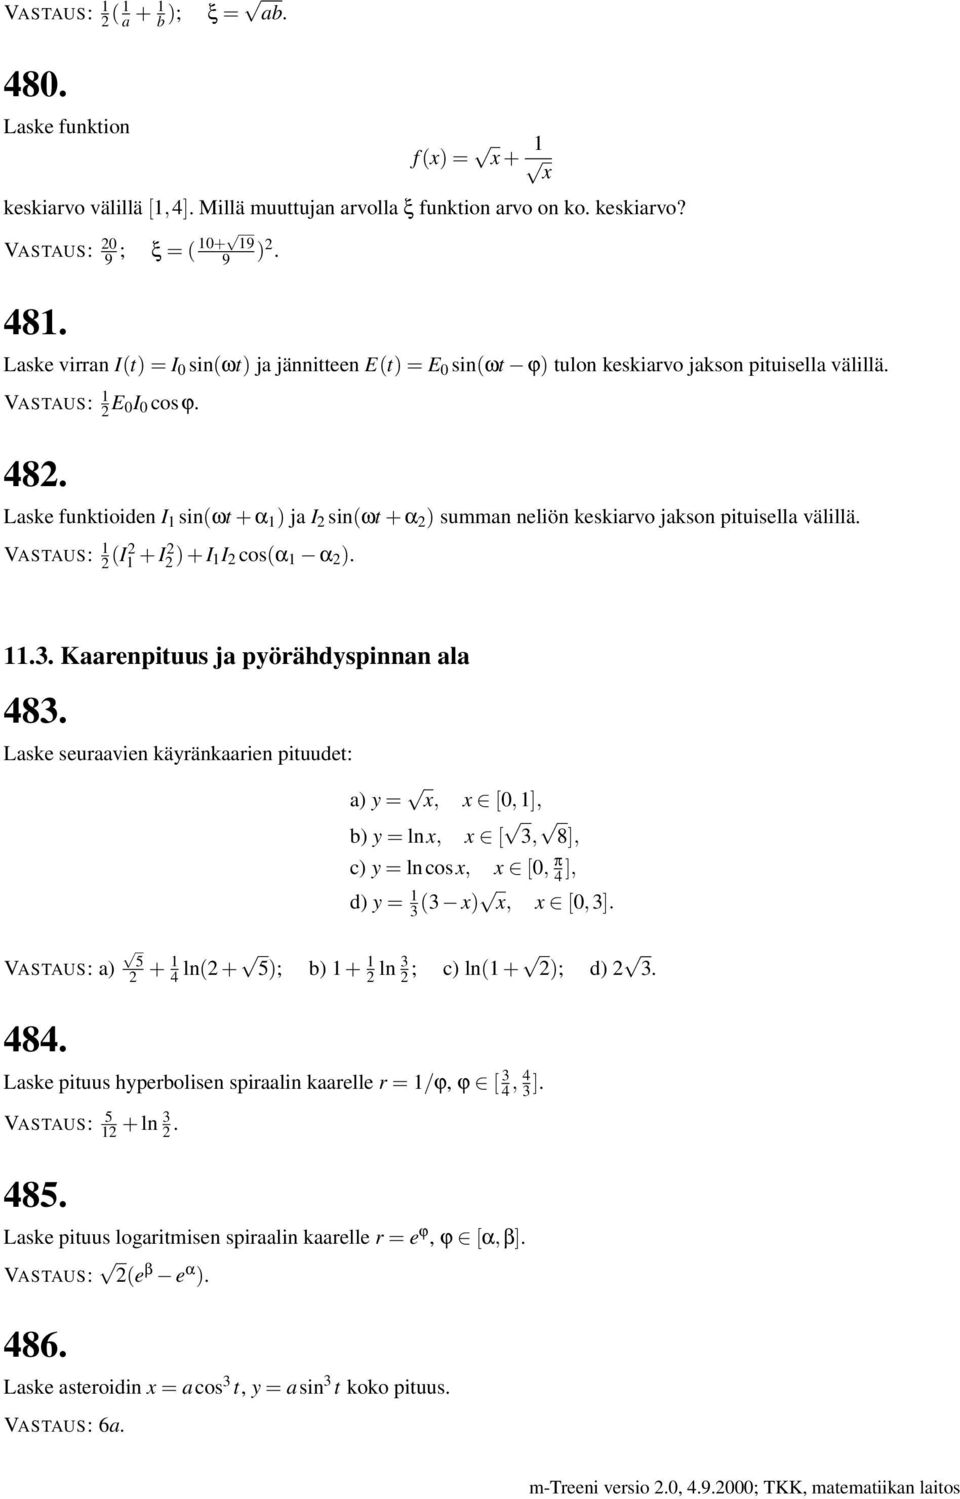 Laske funktioiden I 1 sin(ωt + α 1 ) ja I 2 sin(ωt + α 2 ) summan neliön keskiarvo jakson pituisella välillä. 1 2 (I2 1 + I2 2 ) + I 1I 2 cos(α 1 α 2 ). 11.3. Kaarenpituus ja pyörähdyspinnan ala 483.